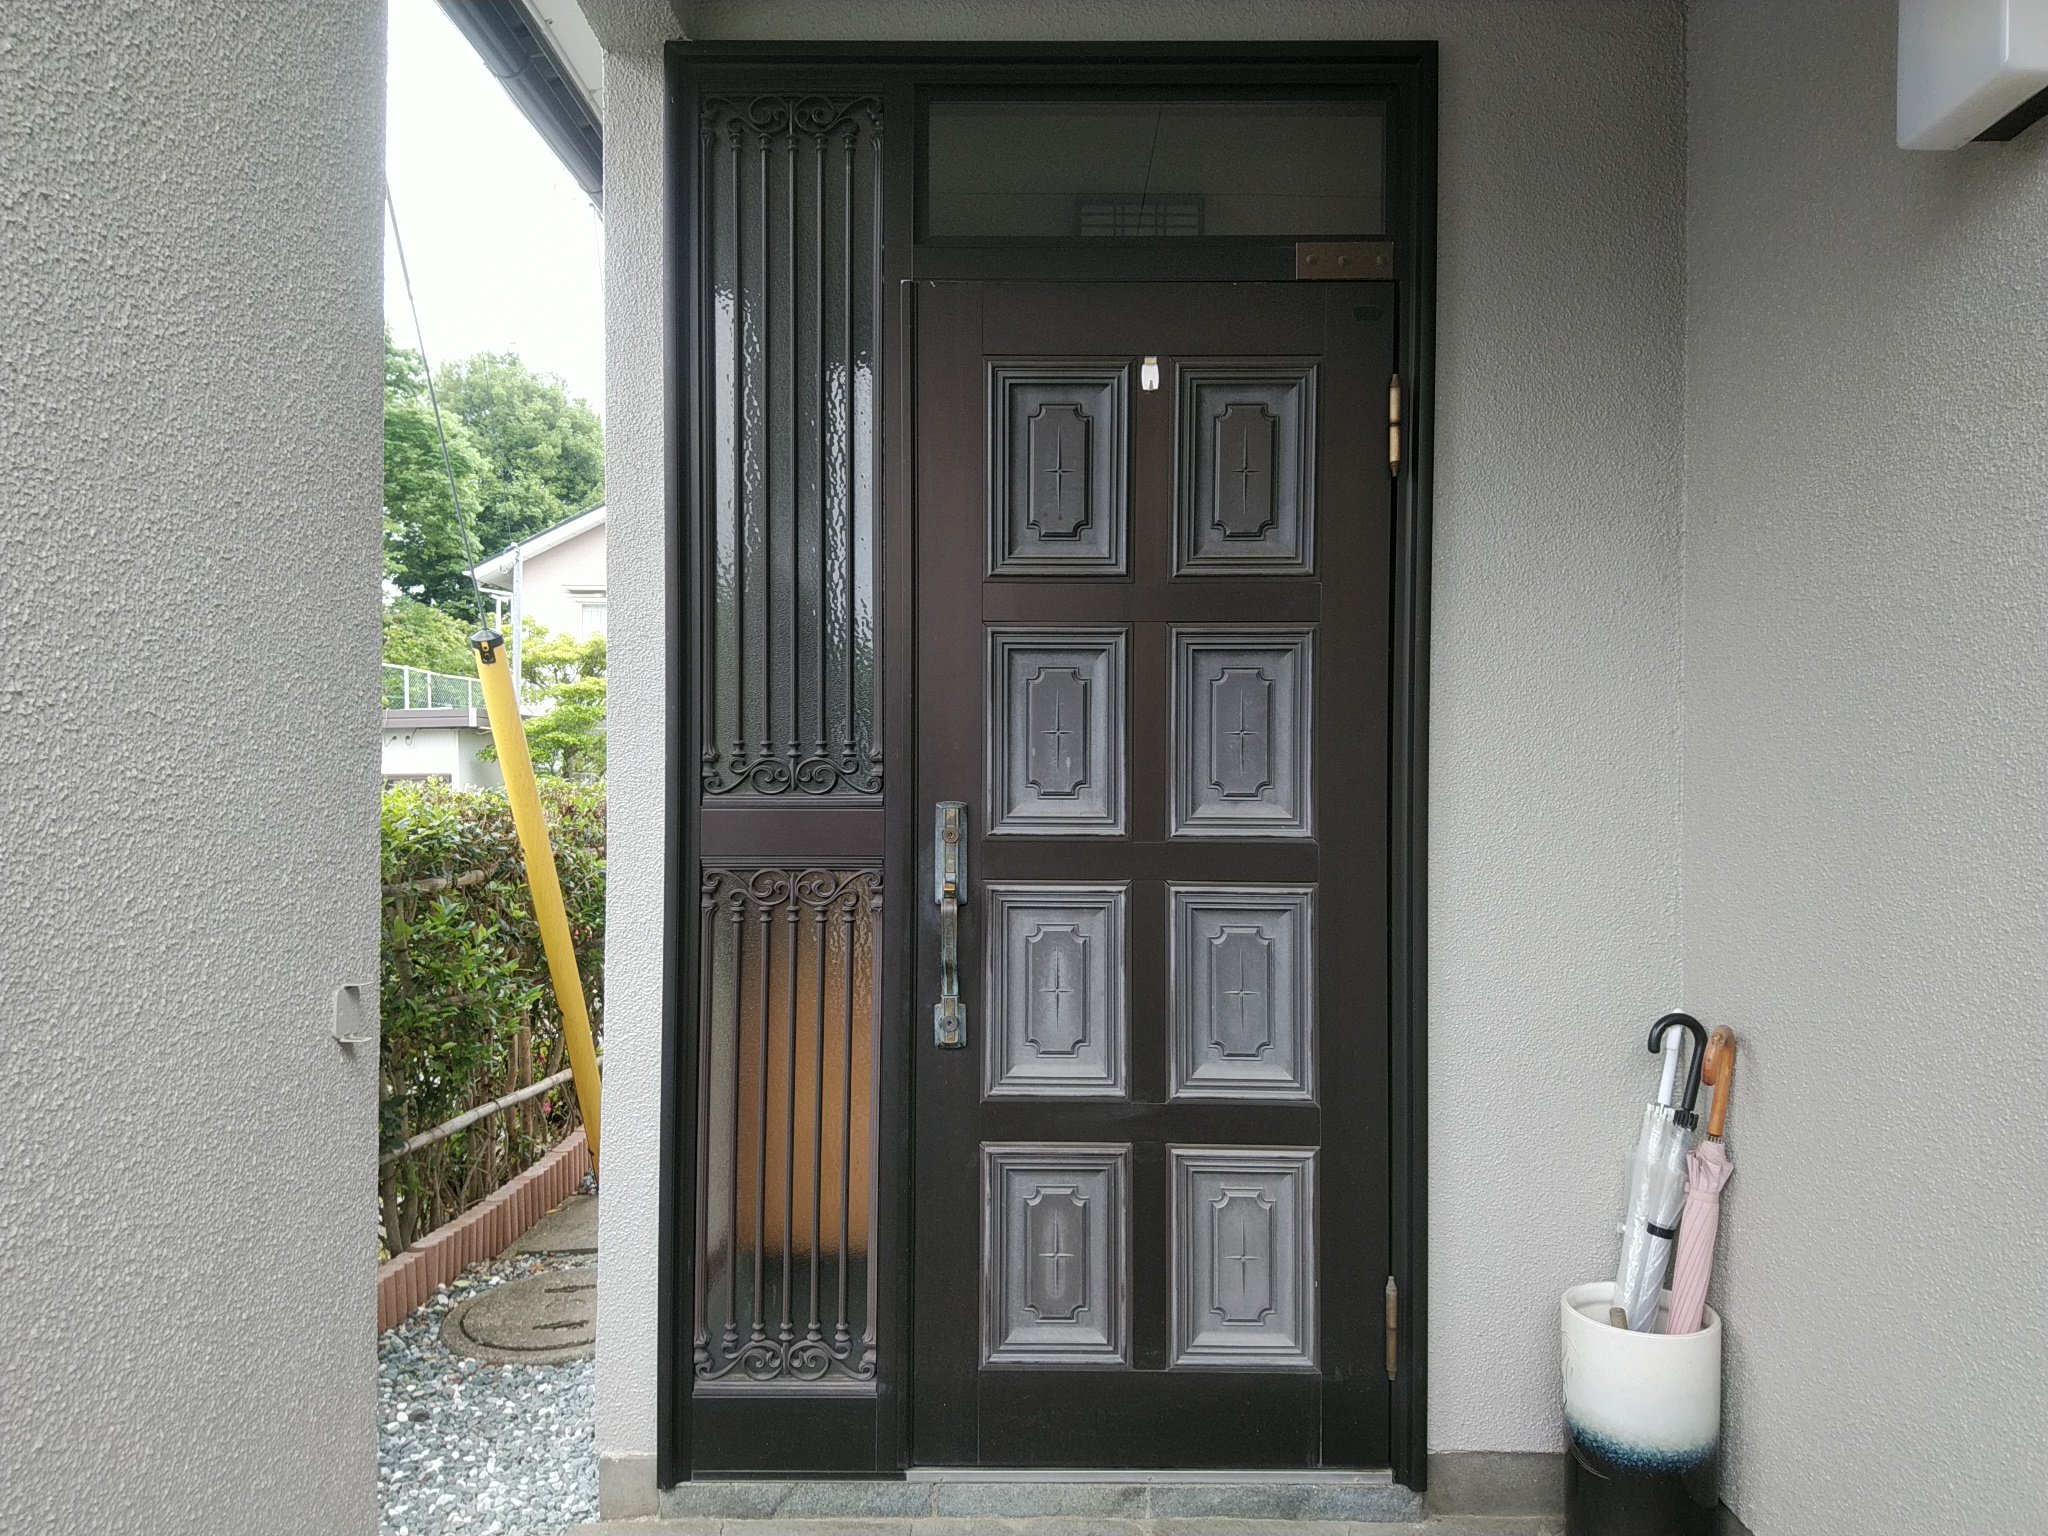 昭和の時代によく見られたデザインのドアをリフォームするとこんなに見違えます【LIXILリシェントM17型】玄関ドアのリフォームなら玄関ドア